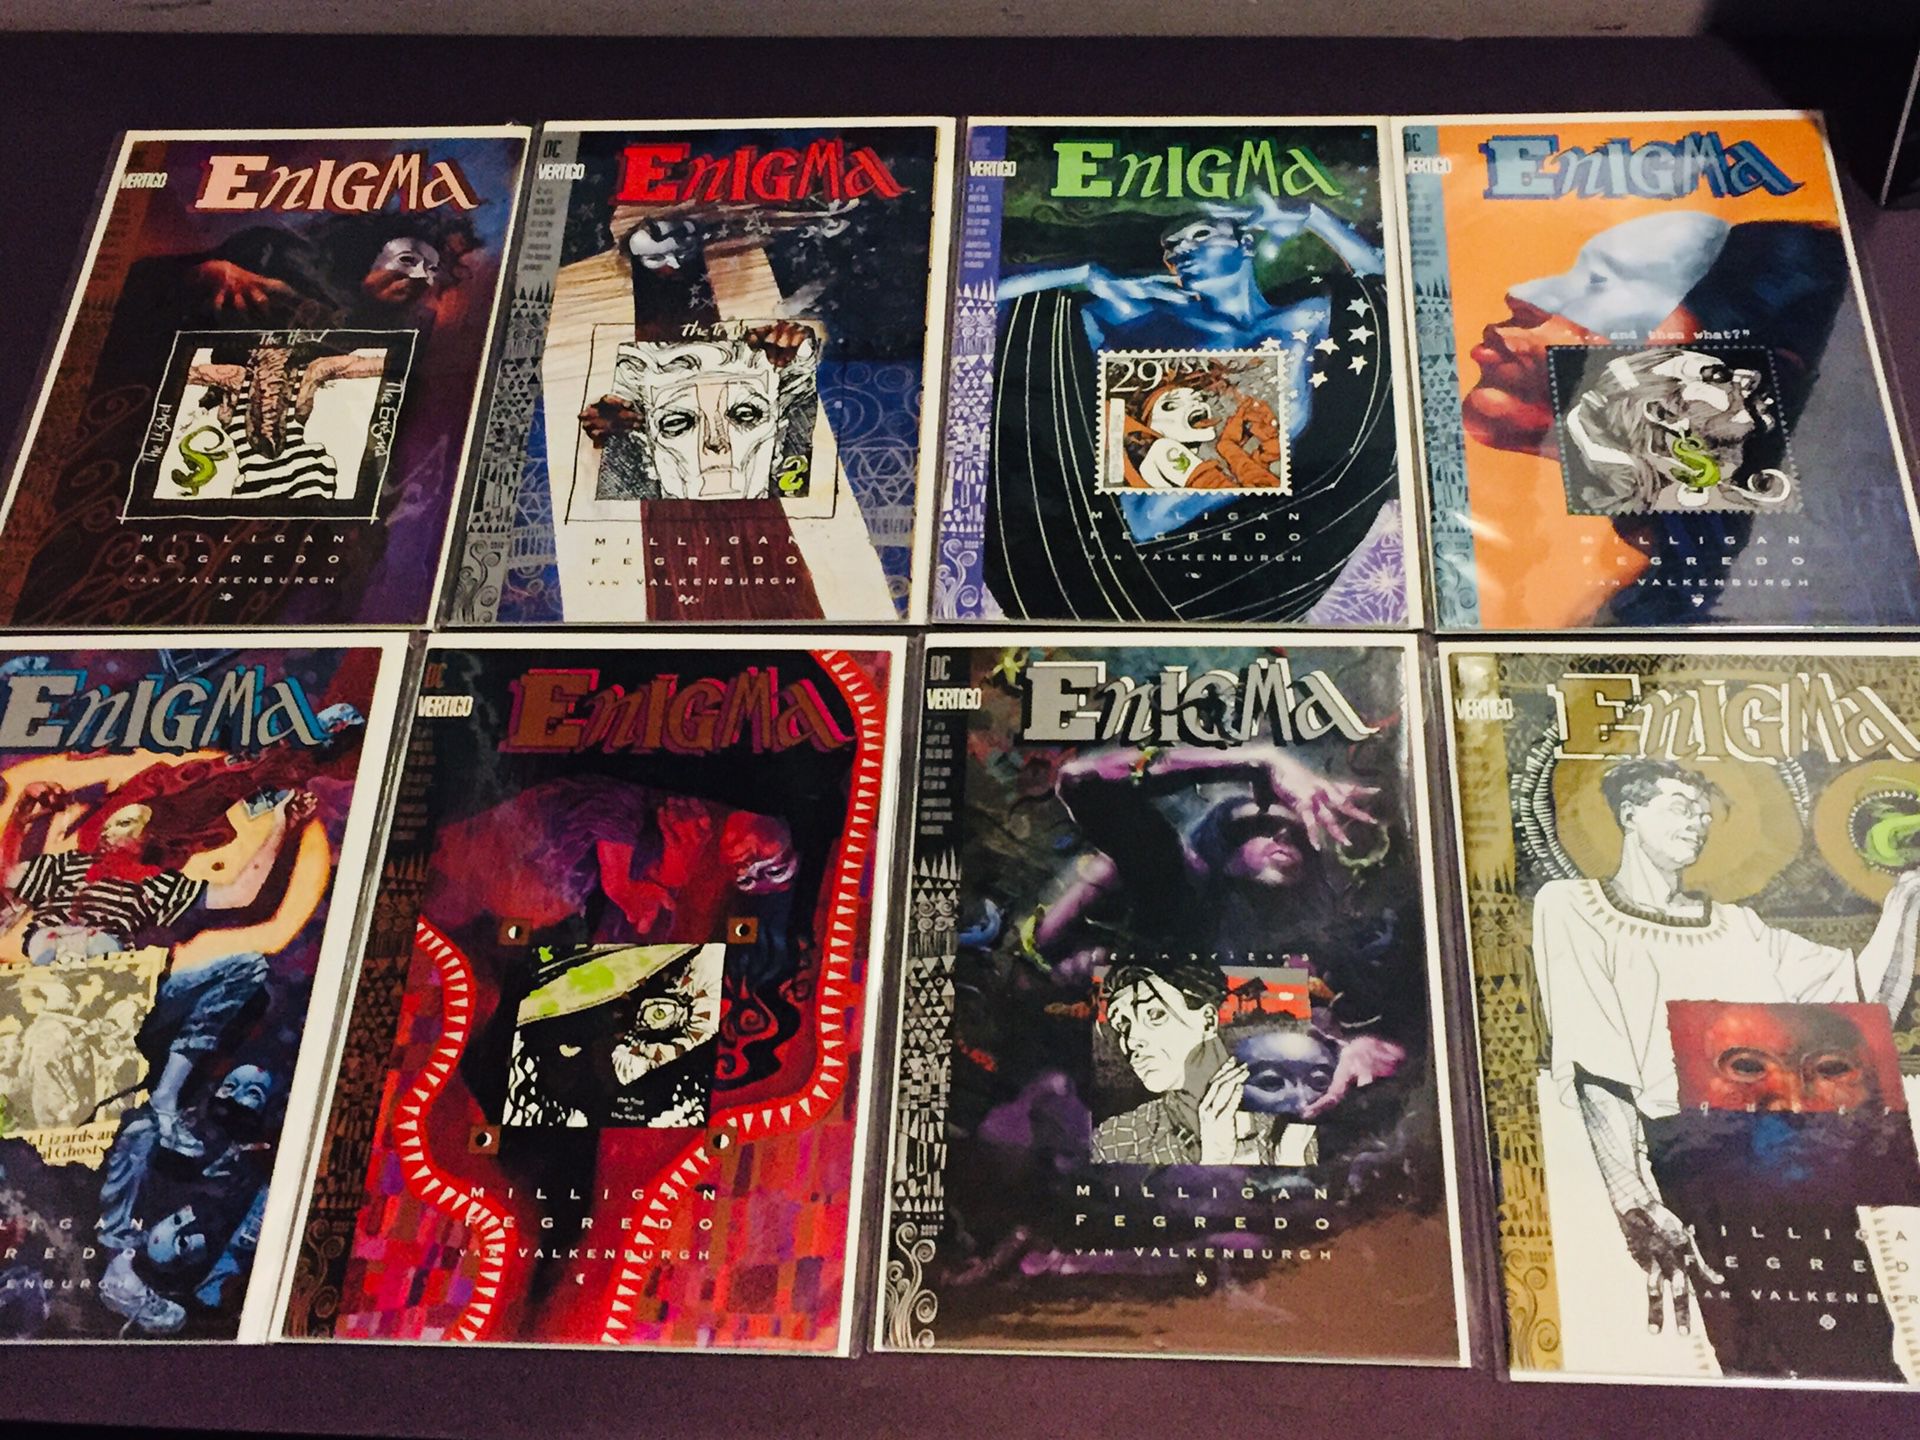 Enigma - DC Vertigo - 1993 - Comic Books - 1-8 - $20 Cash